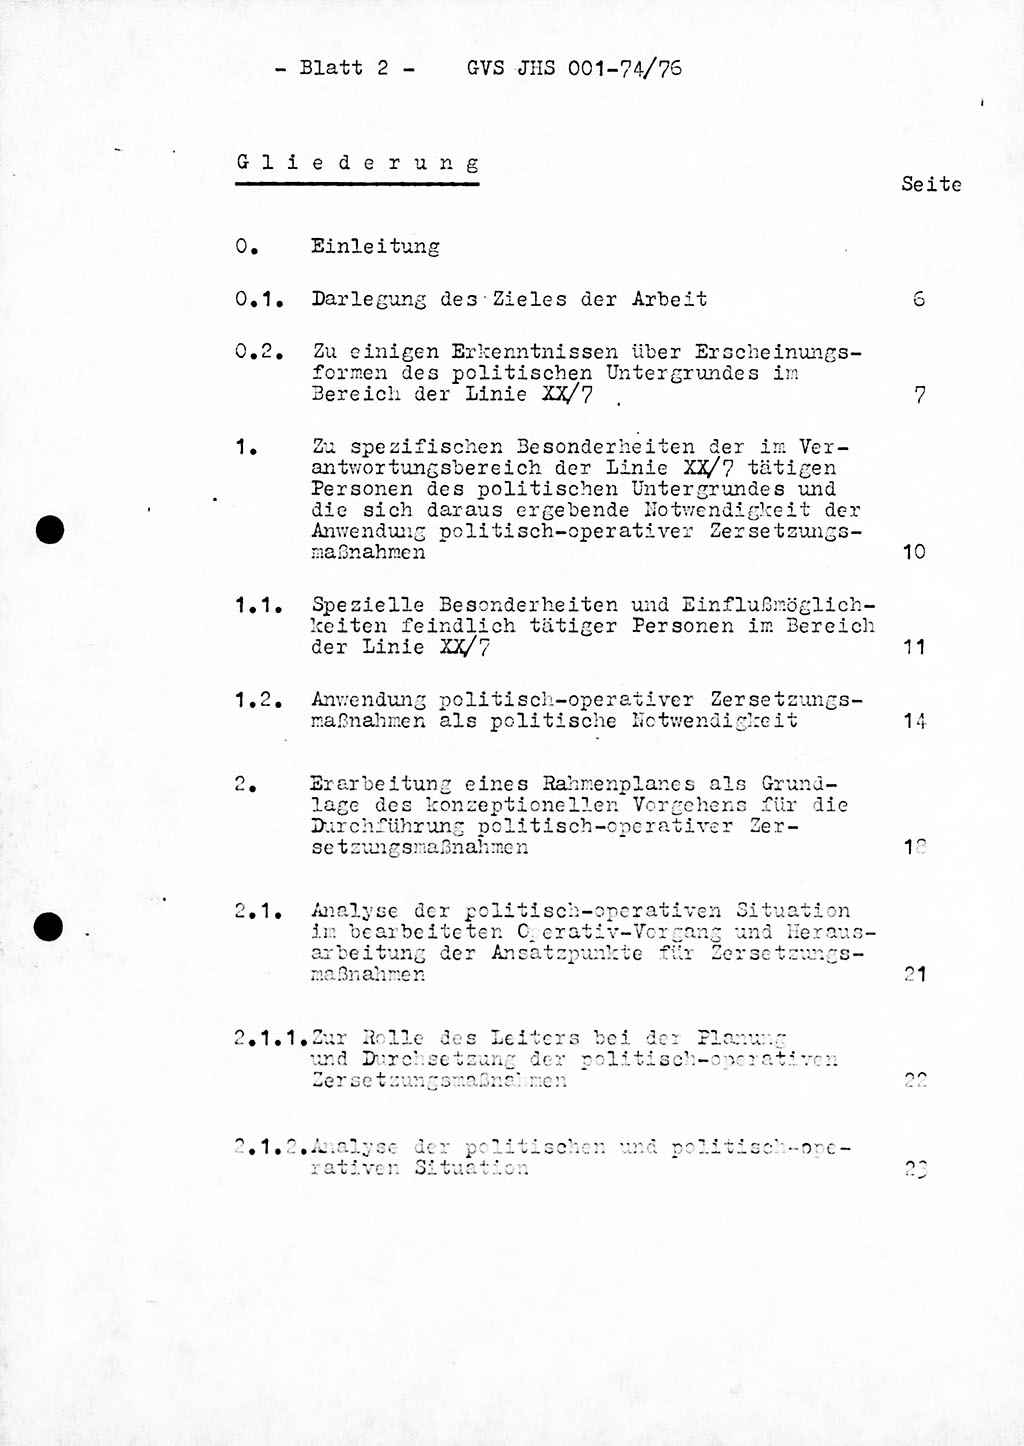 Diplomarbeit Hauptmann Joachim Tischendorf (HA ⅩⅩ), Ministerium für Staatssicherheit (MfS) der Deutschen Demokratischen Republik (DDR), Juristische Hochschule (JHS), Geheime Verschlußsache (GVS) 001-74/76, Potsdam 1976, Seite 2 (Dipl.-Arb. MfS DDR JHS GVS 001-74/76 1976, S. 2)